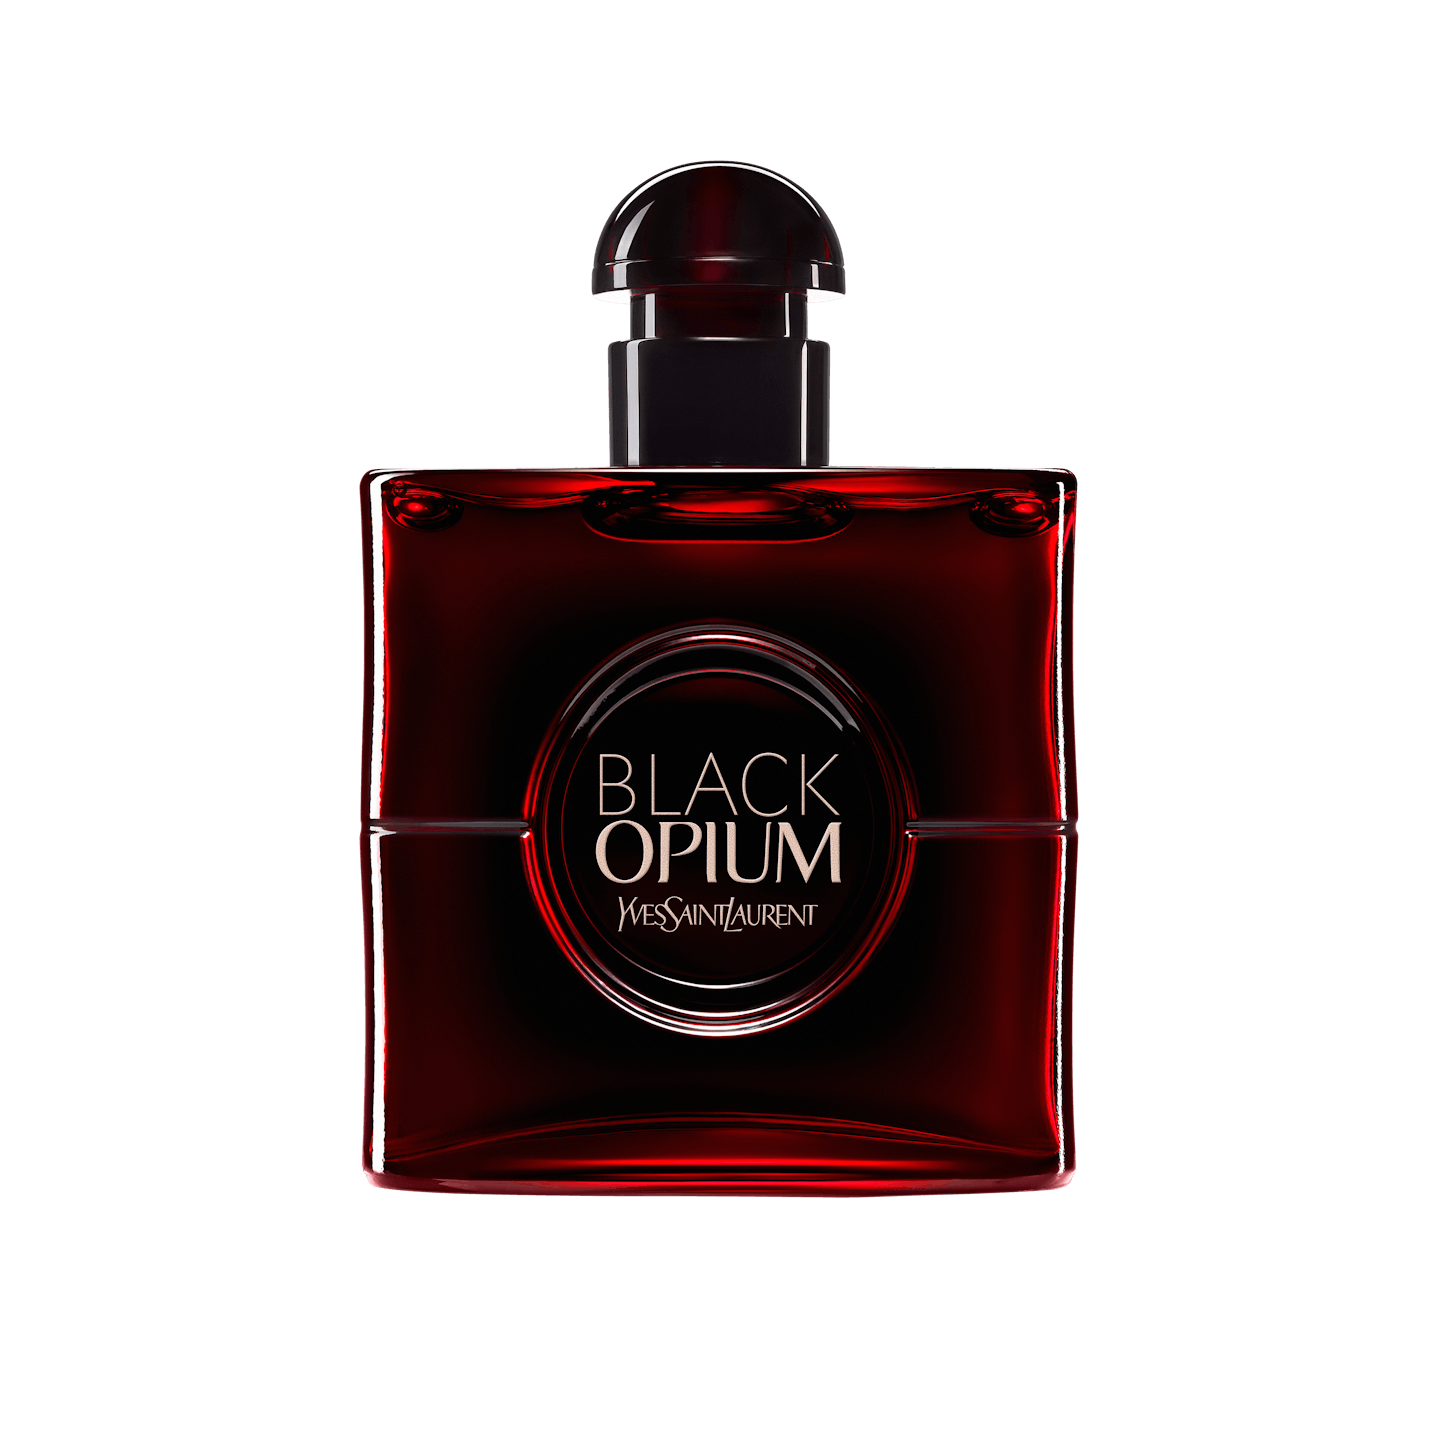 Yves Saint Laurent, Black Opium Over Red